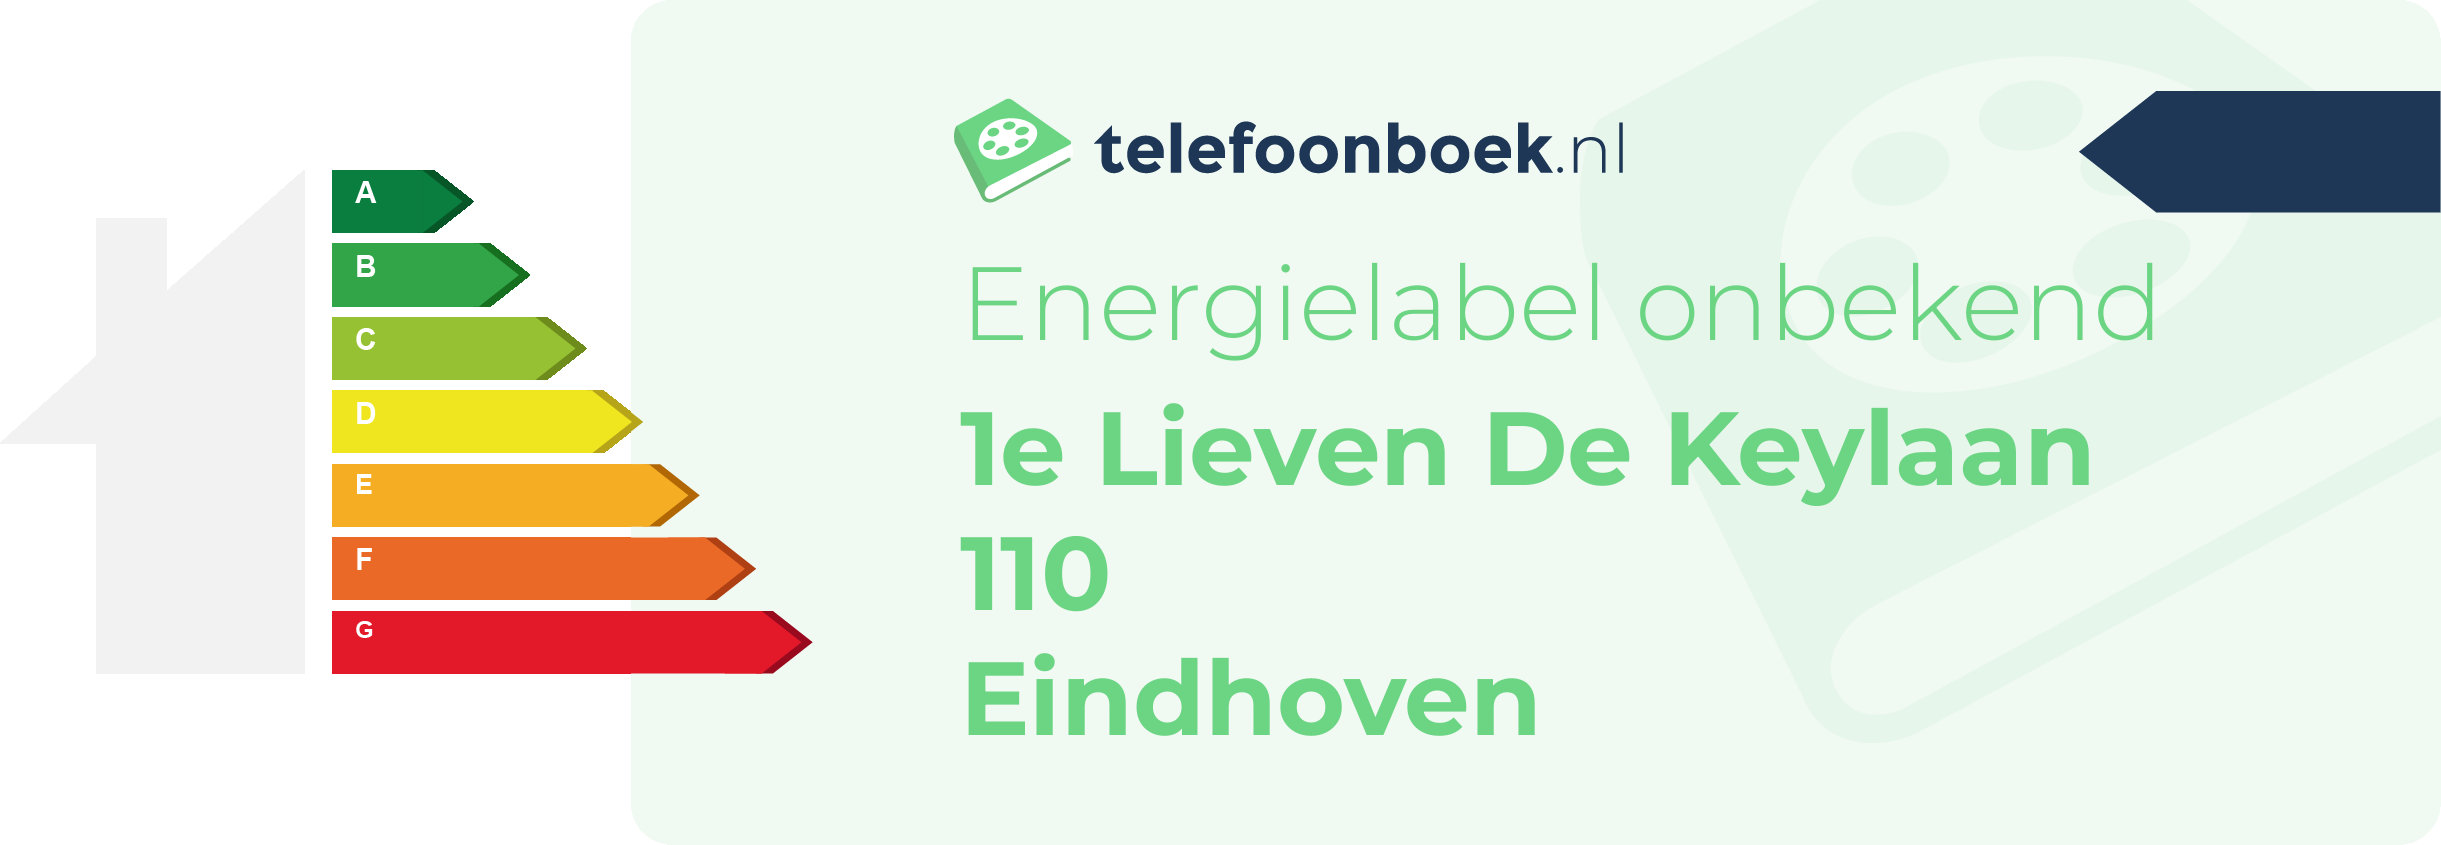 Energielabel 1e Lieven De Keylaan 110 Eindhoven